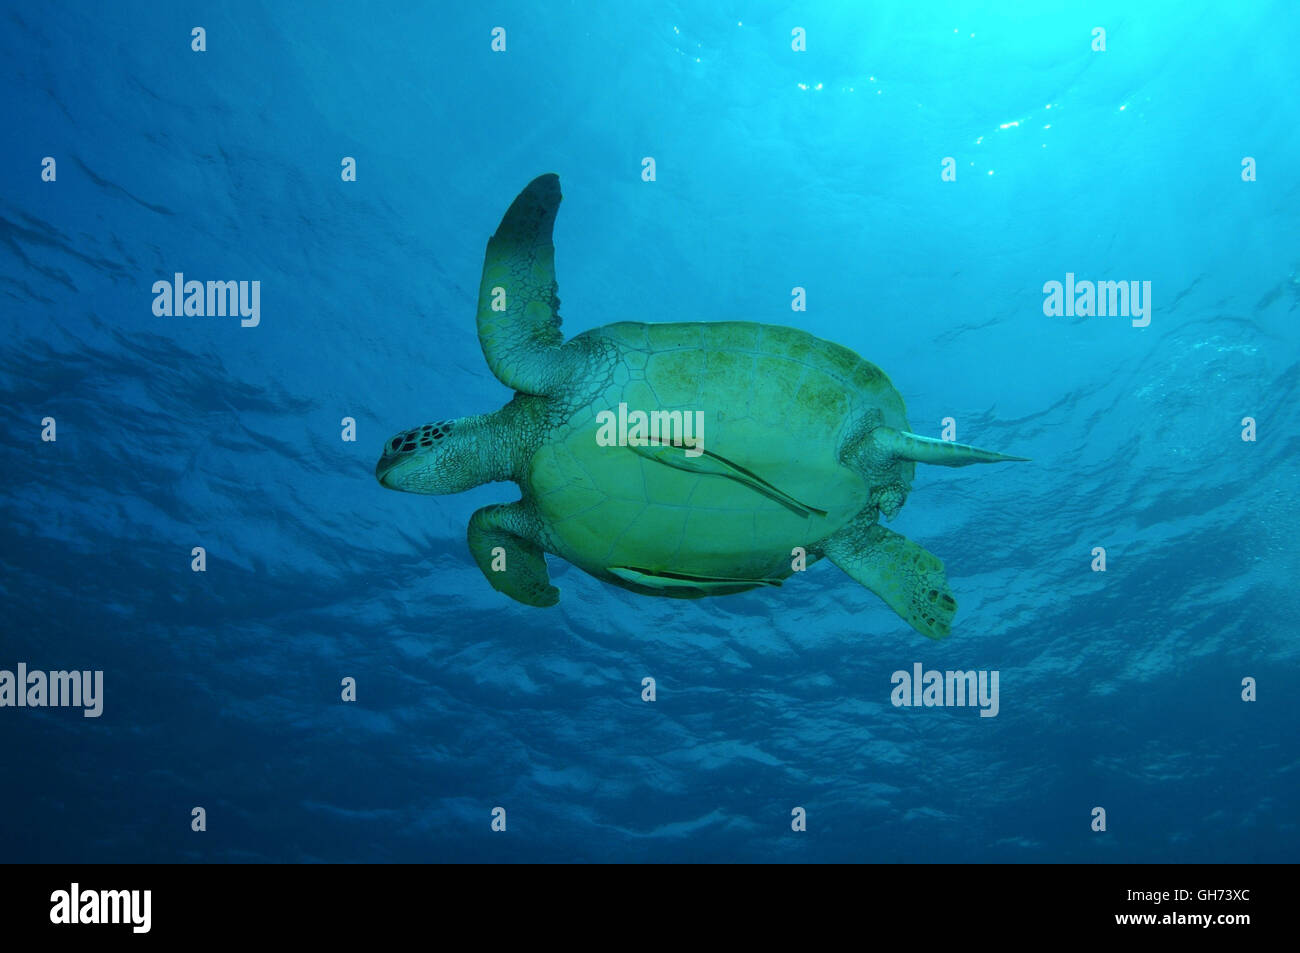 Grüne Meeresschildkröte oder Schwimmen im blauen Wasser, Indo-Pazifik, Philippinen, Südost-Asien Pazifische Suppenschildkröte (Chelonia Mydas) Stockfoto